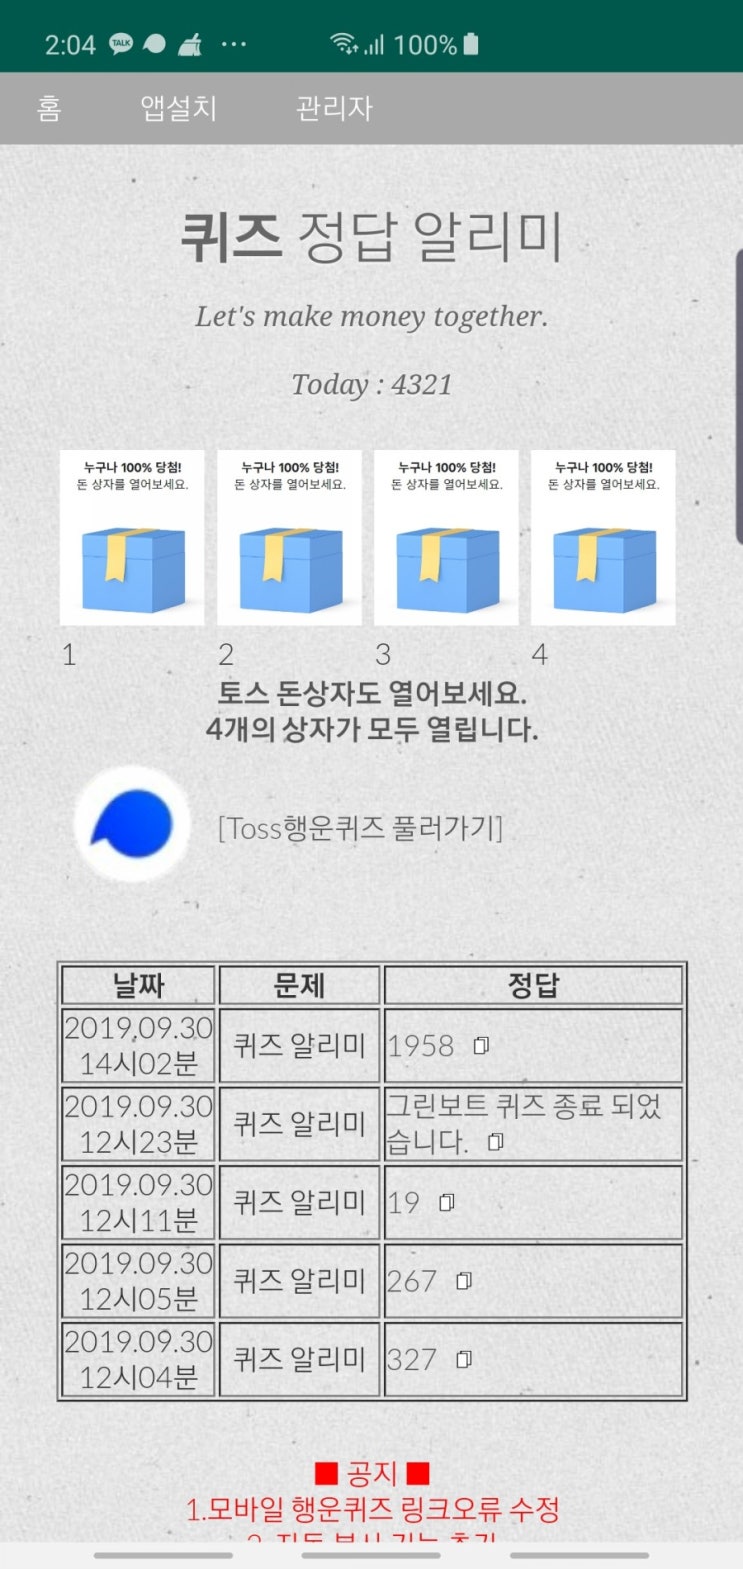 시몬스 킹 매트리스 할인 토스행운퀴즈 정답 공개(실시간)